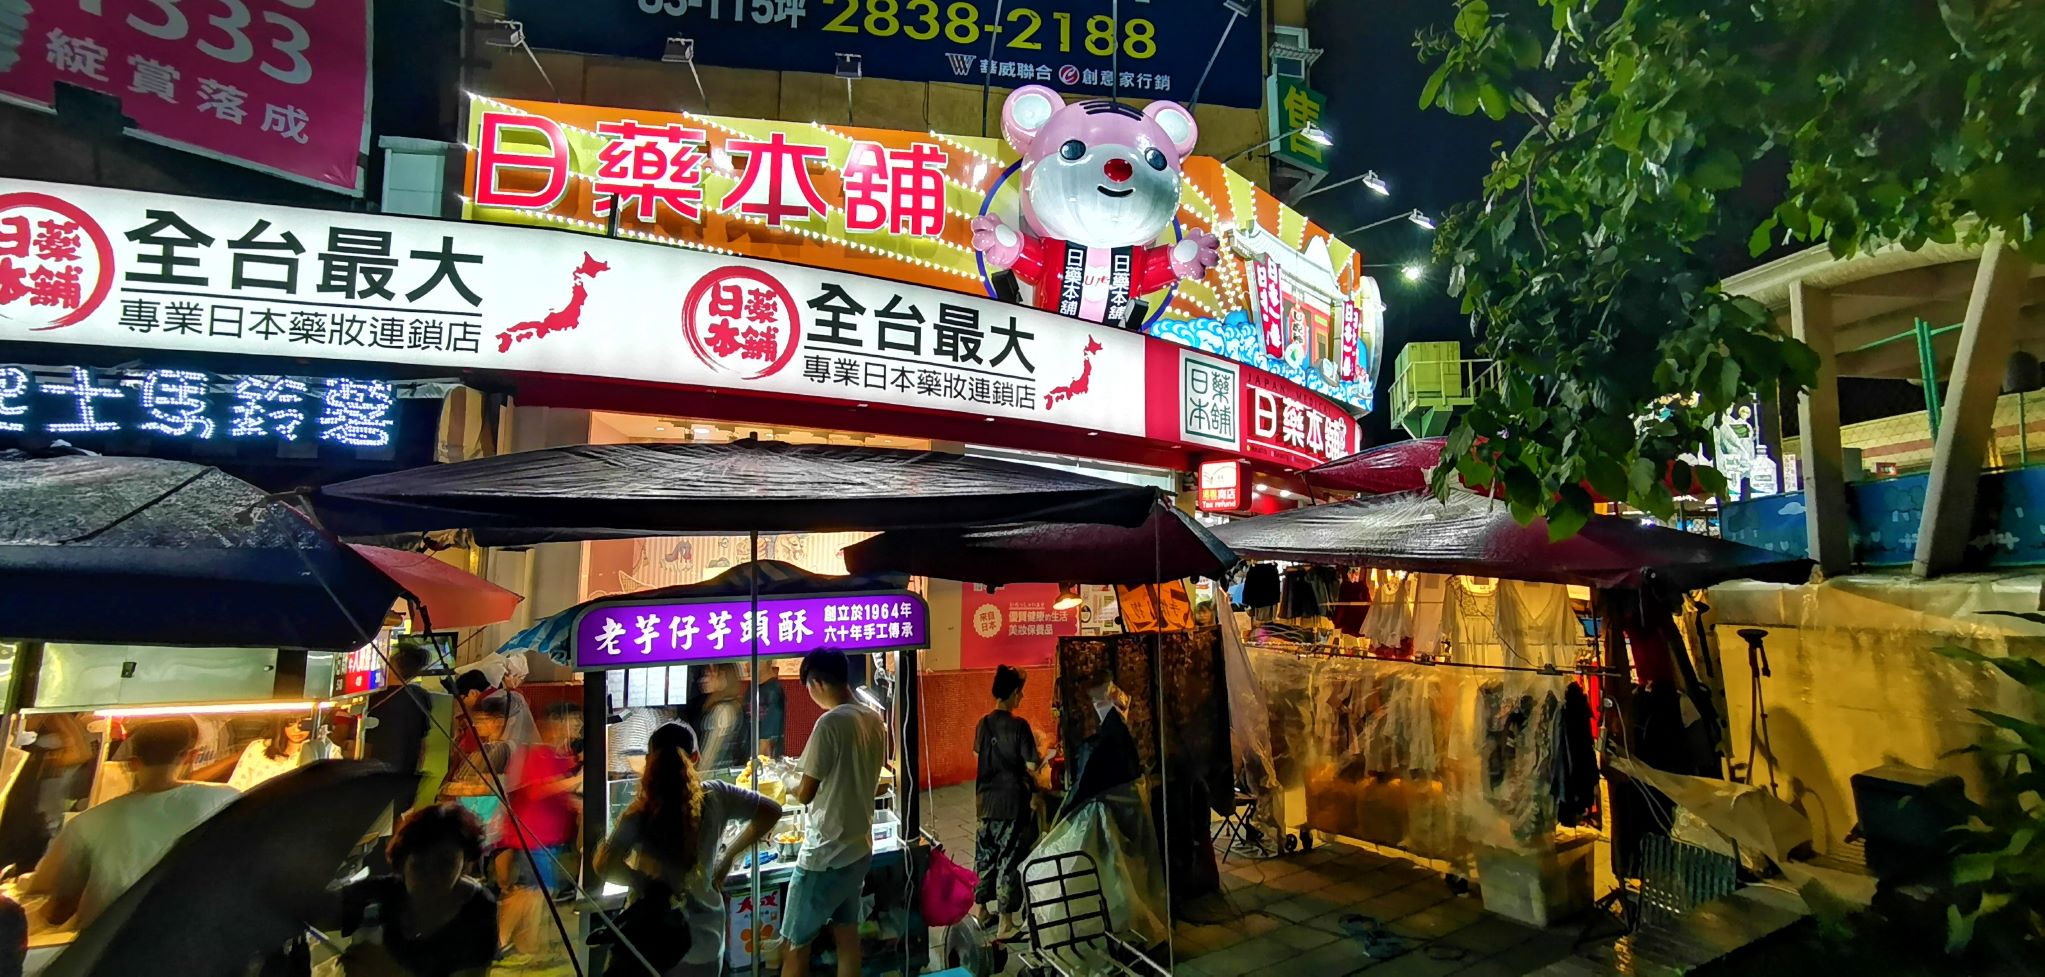 Shilin Night Market at night